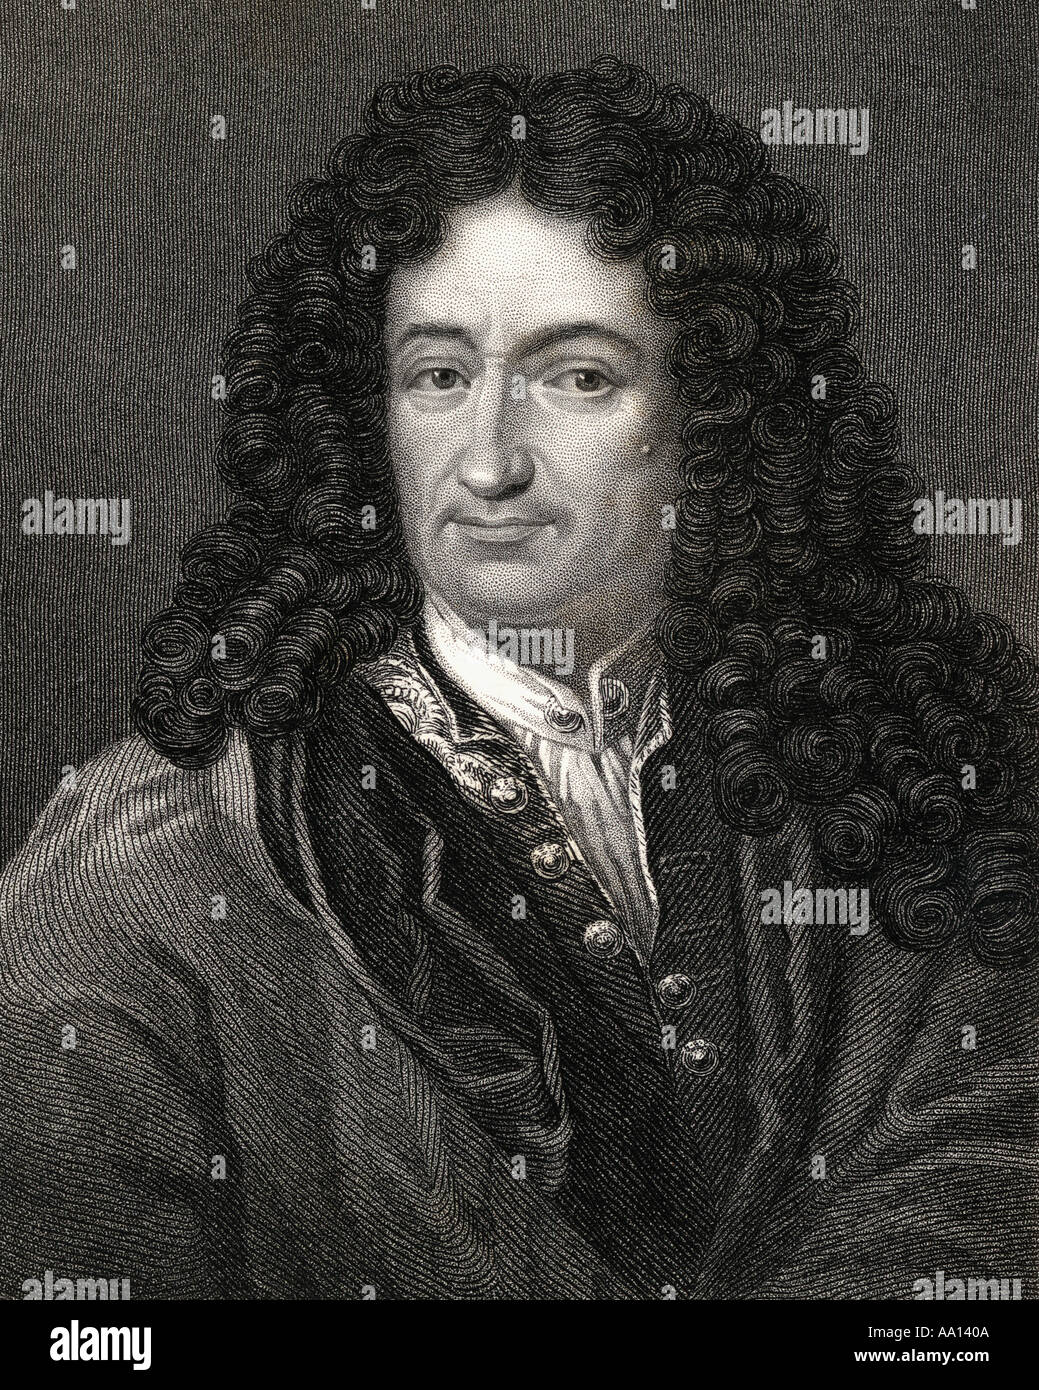 (Gottfried Wilhelm Von Leibniz) o Leibnitz,1646 - 1716. Pensador y filósofo alemán, en la historia de las matemáticas y la historia de la filosofía. Foto de stock